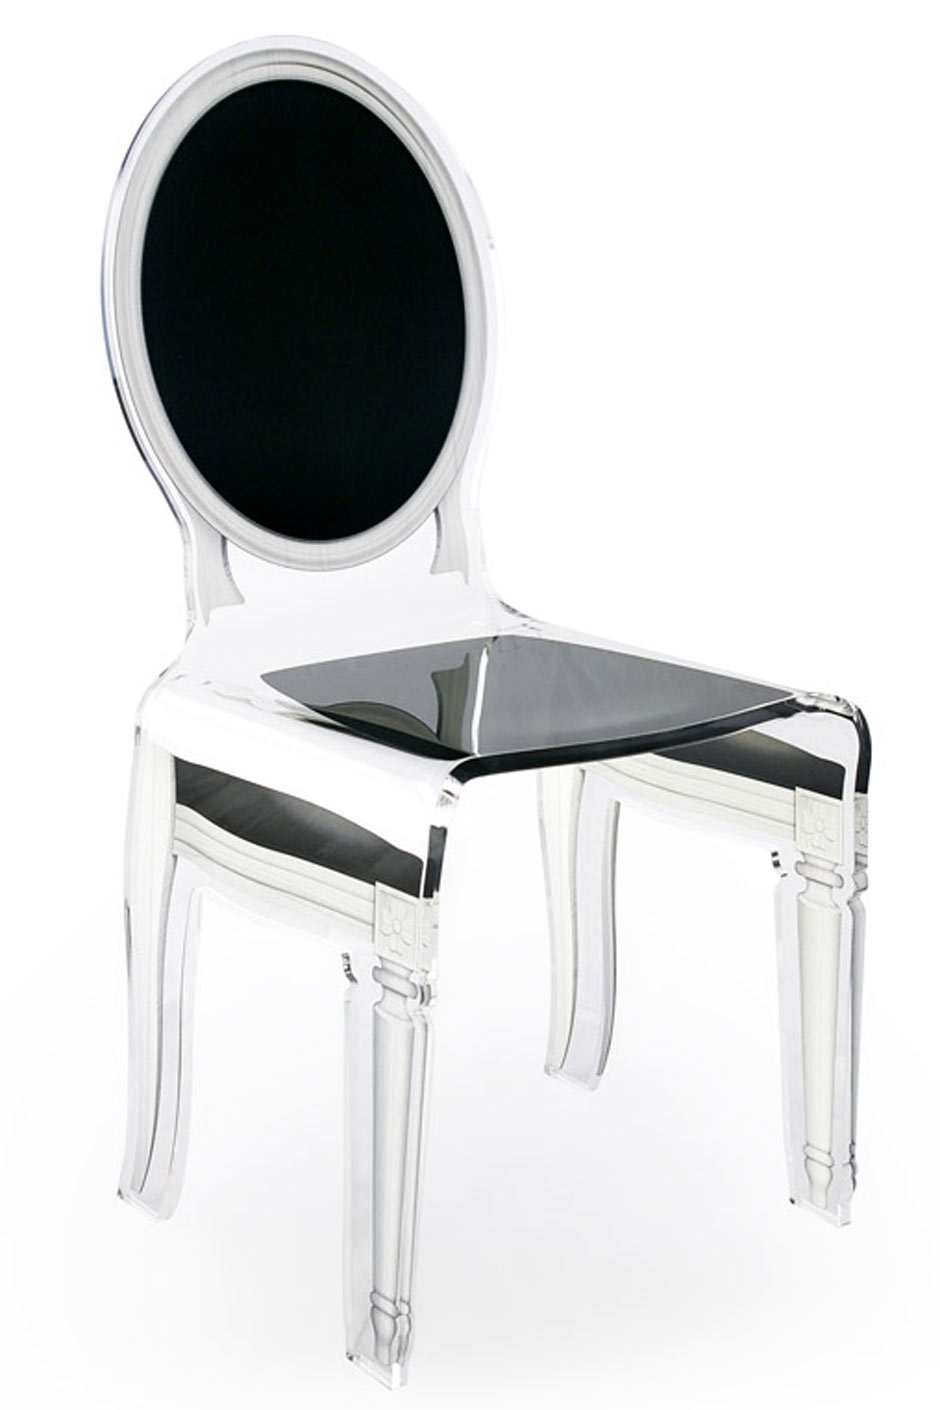 Chaise en plexiglas design baroque Sixteen motif noir  Acrila spécialiste  du plexiglas - Réf. 11030390 - mobile